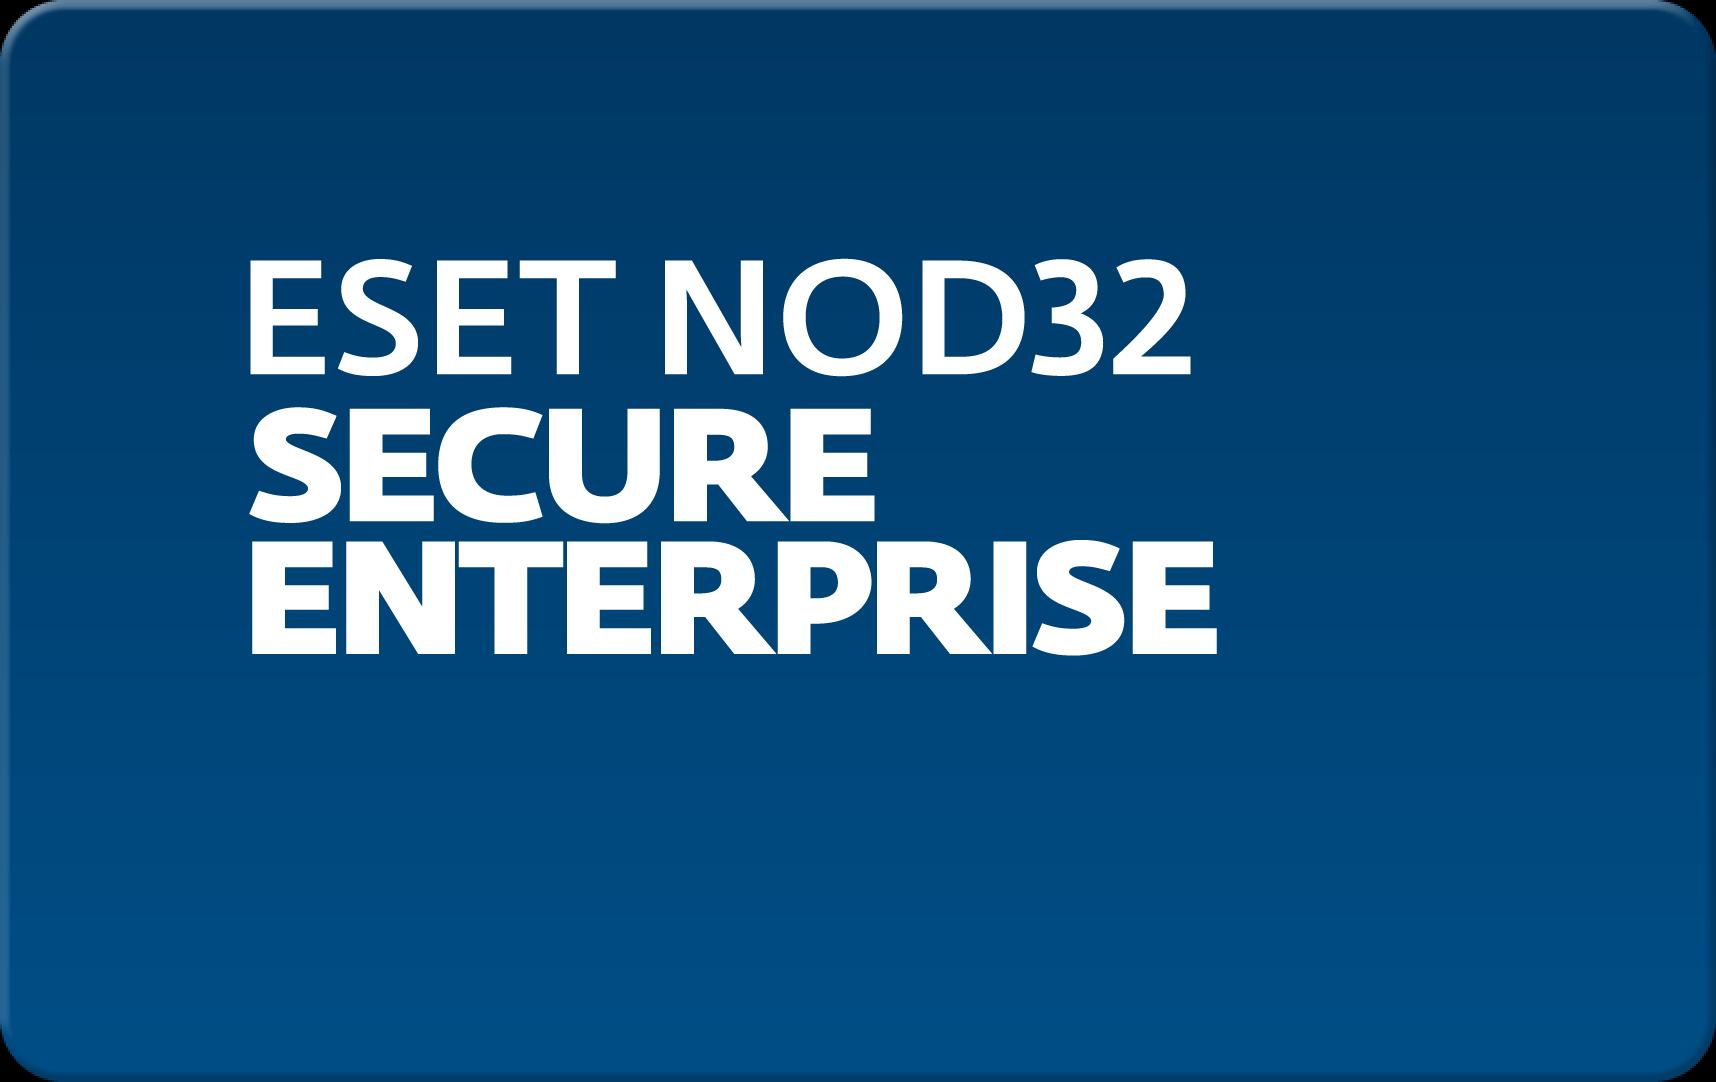        Eset NOD32 Secure Enterprise  185  NOD32-ESE-NS-1-185  #1